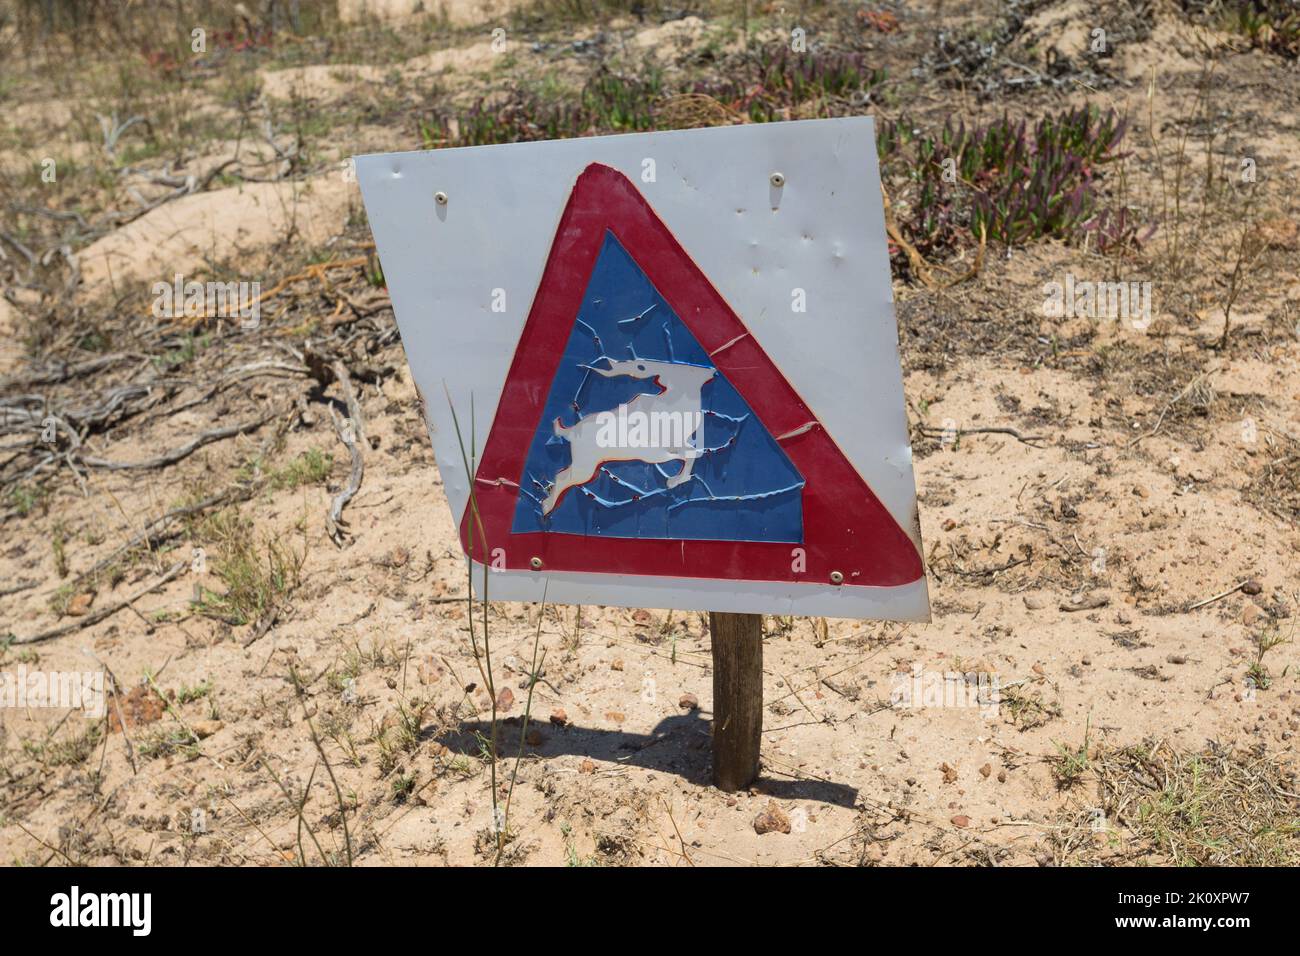 Señal de tráfico o señalización con un antílope o animal salvaje en un triángulo azul y rojo que muestra precaución cuando se conduce concepto de seguridad vial en Sudáfrica Foto de stock